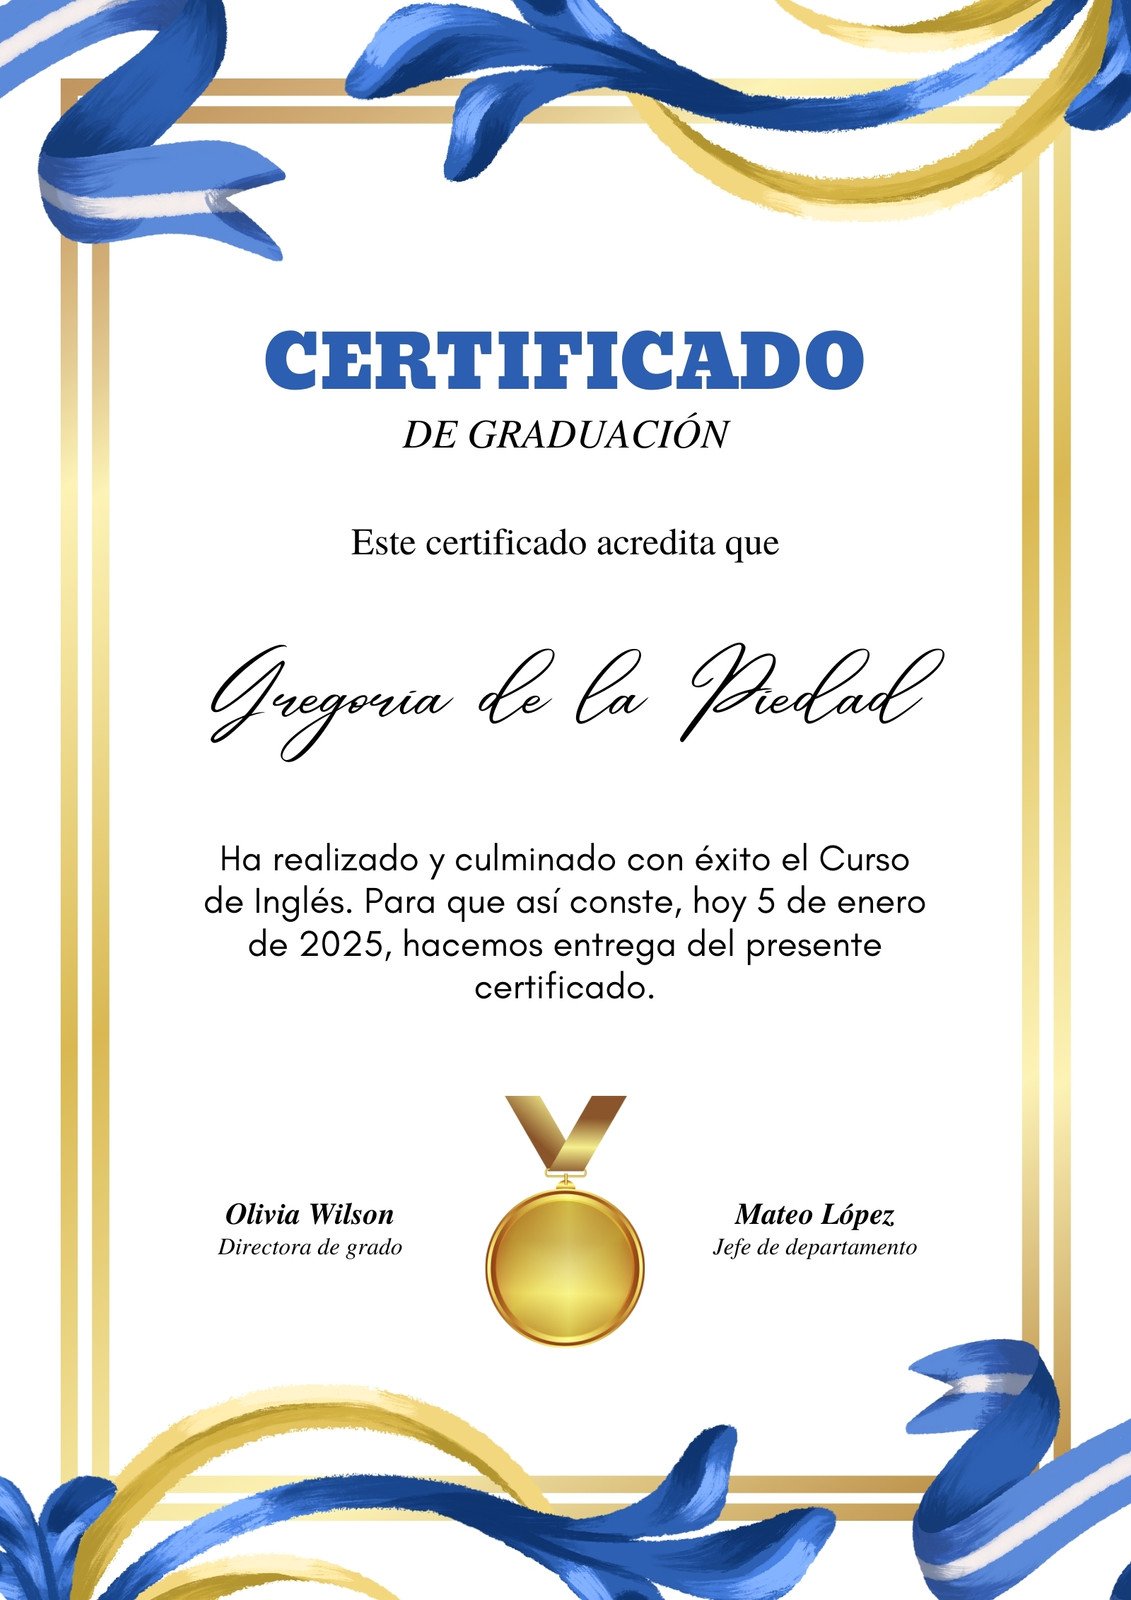 Plantillas de Certificados de diploma editables online | Canva